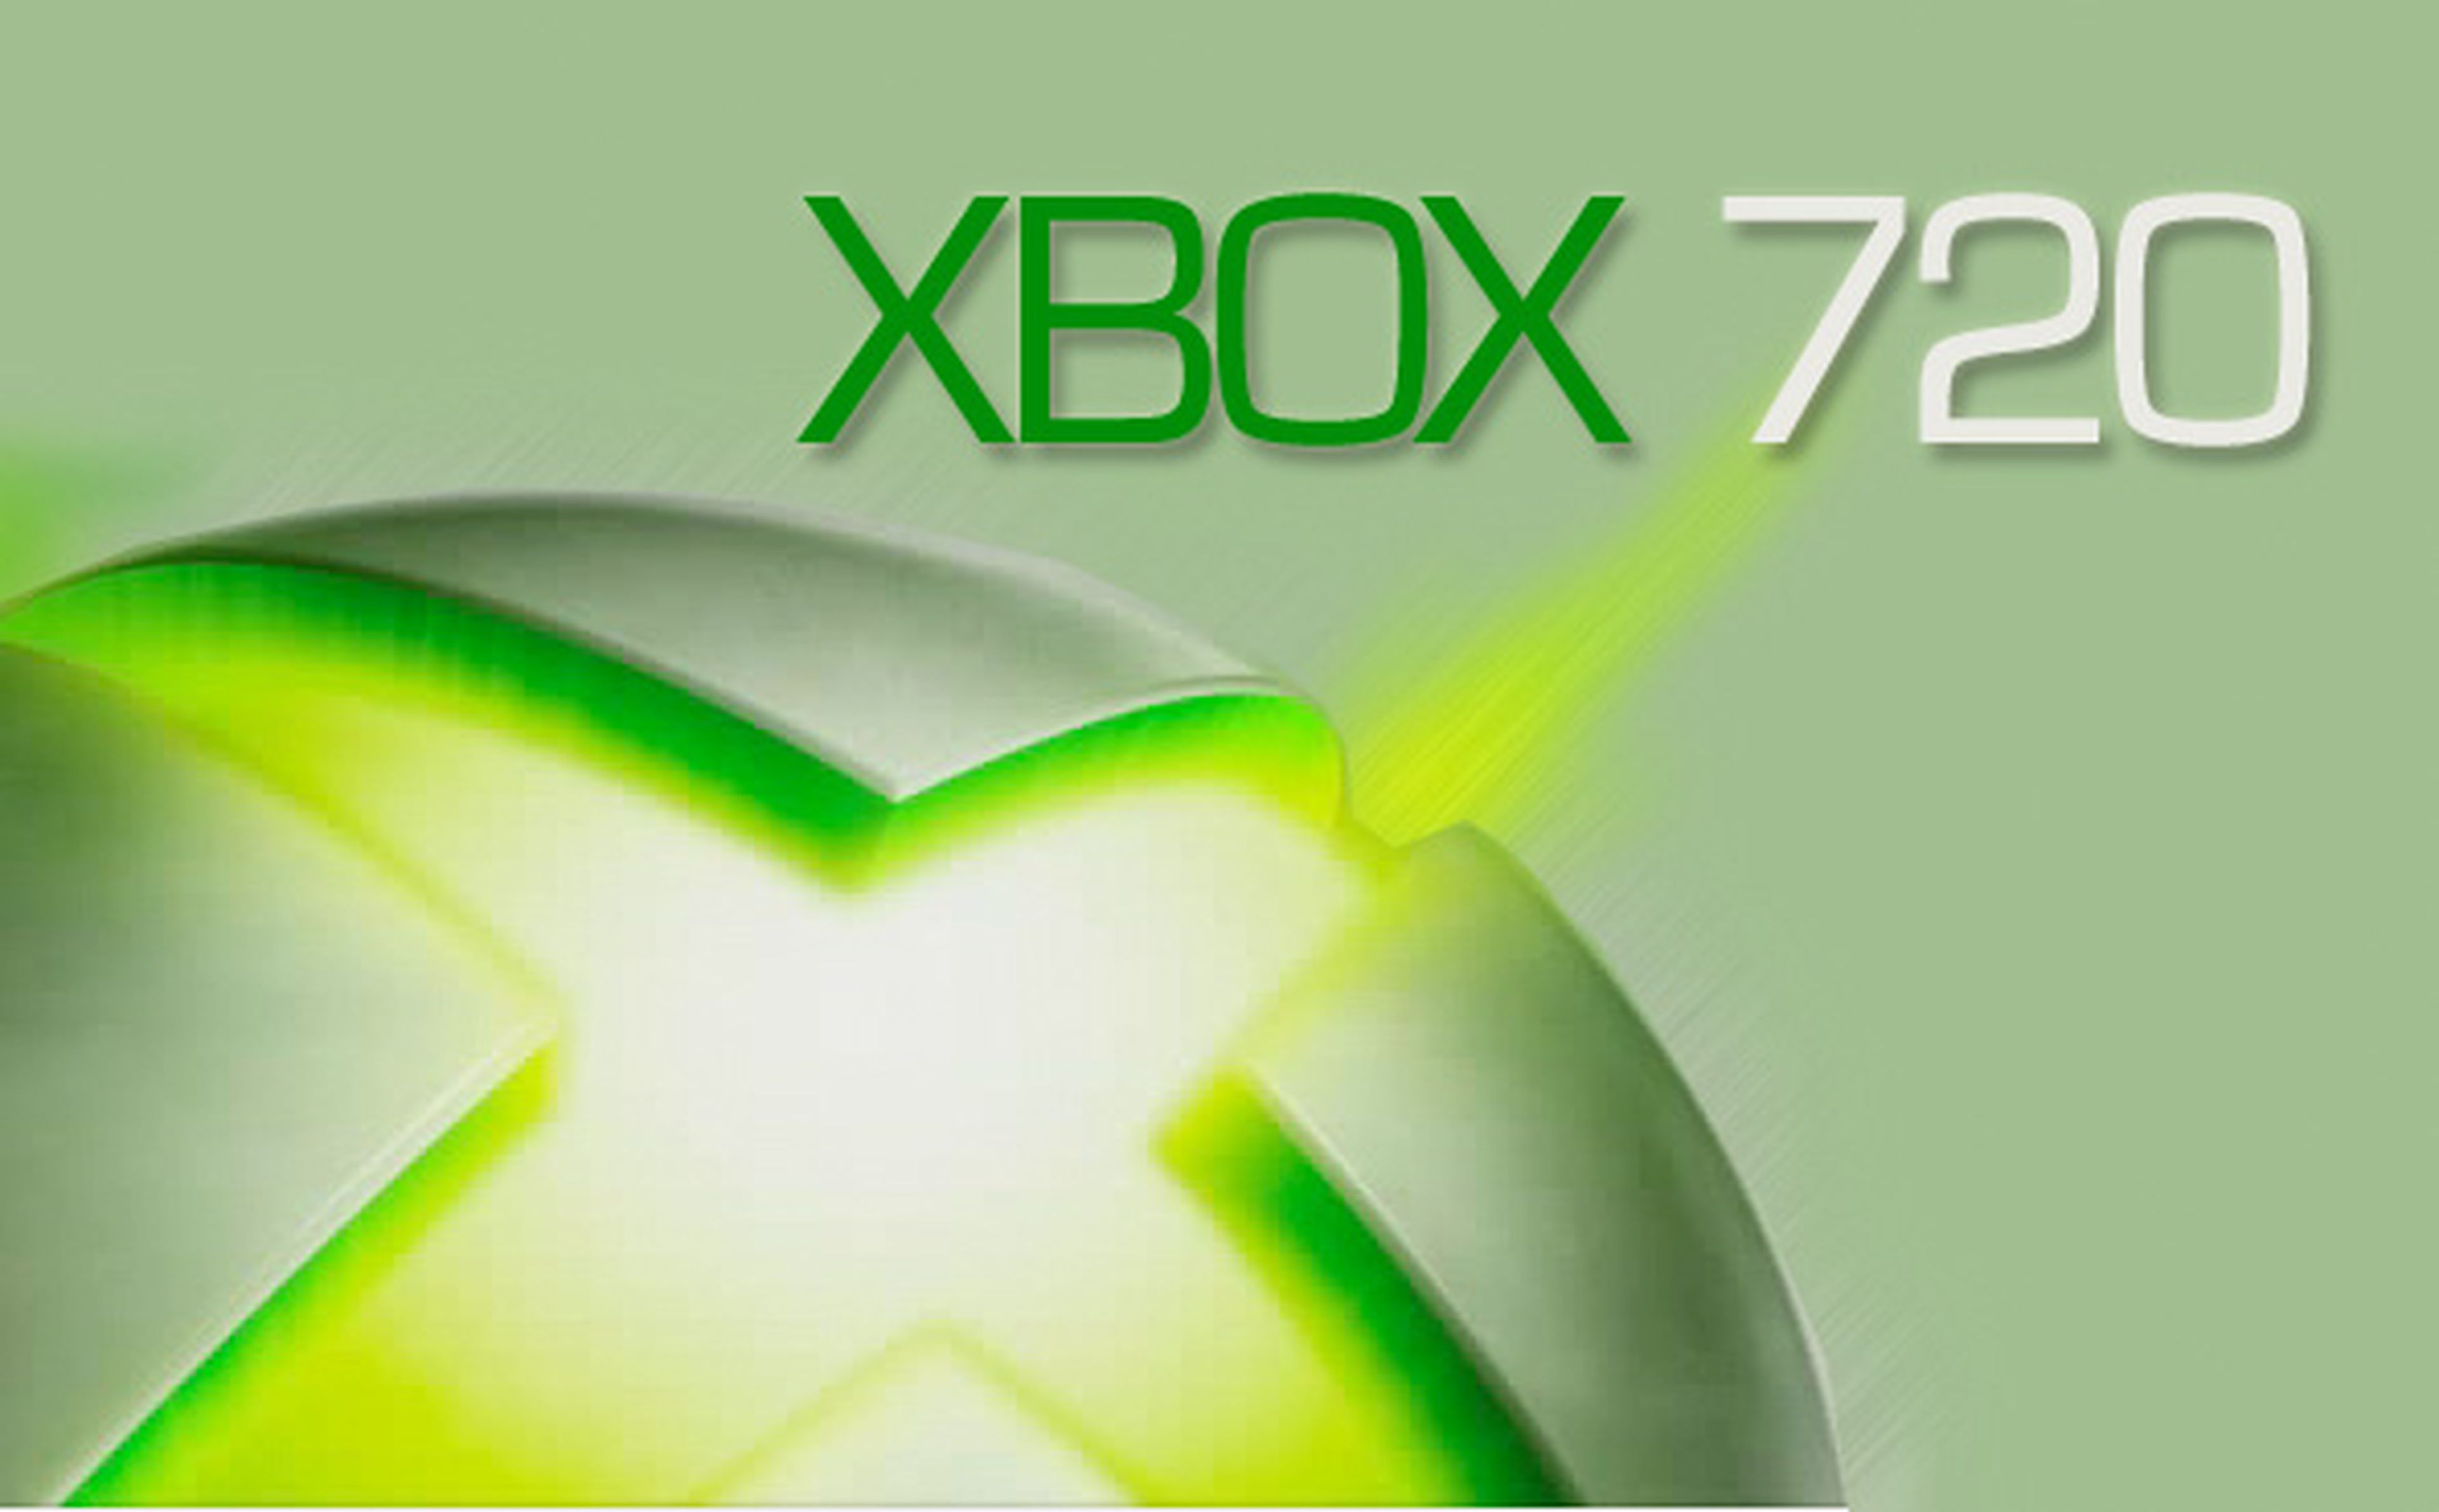 Bajan las ventas y ¿llega Xbox 720?